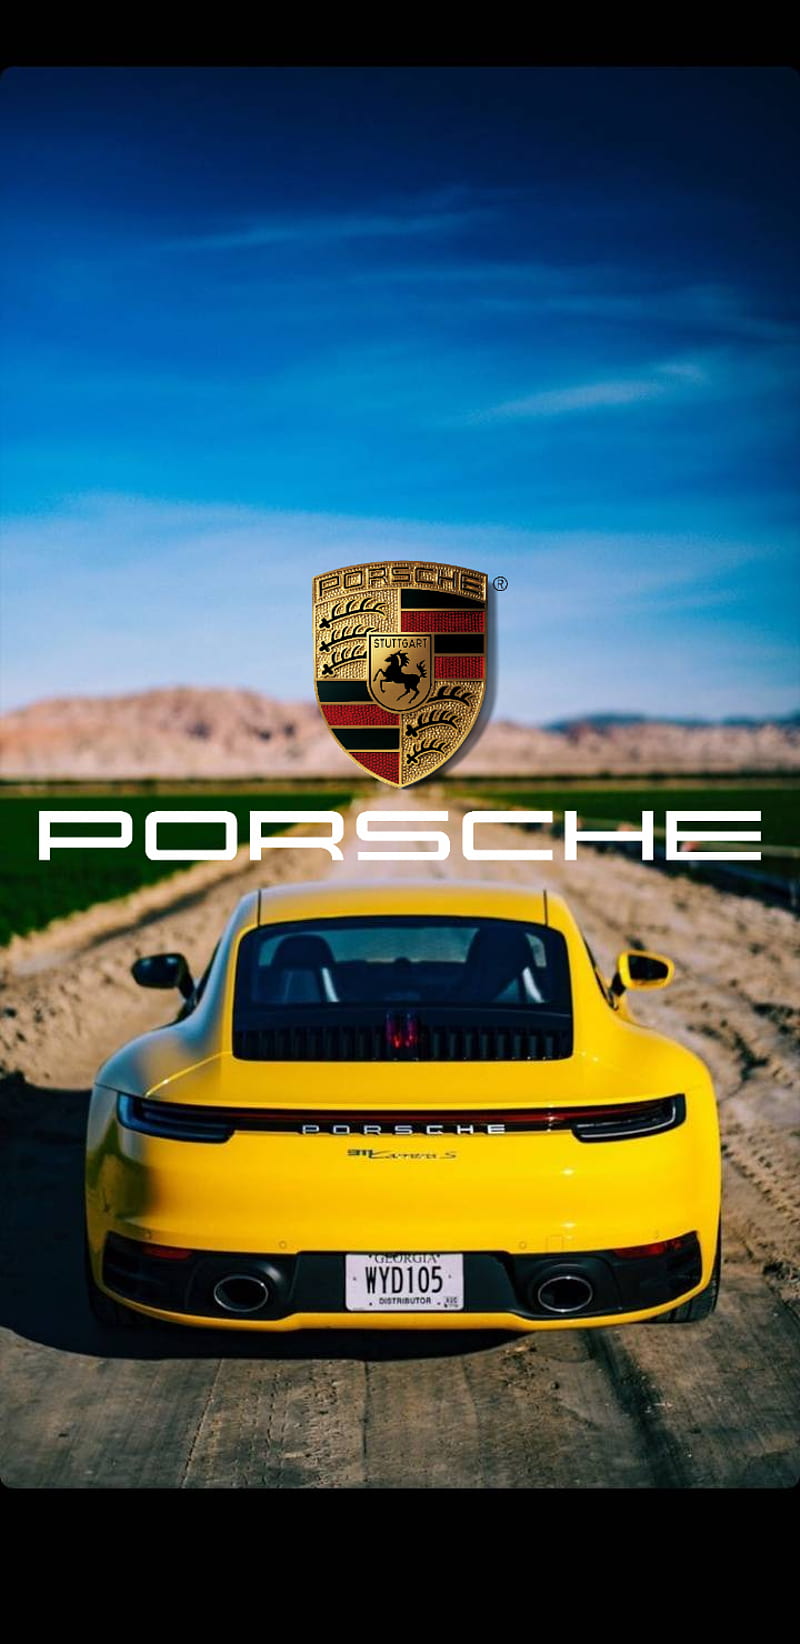 Porsche 911, 911, best cars, carrera, carros, porsche, porsche carrera, speed, yellow, HD phone wallpaper